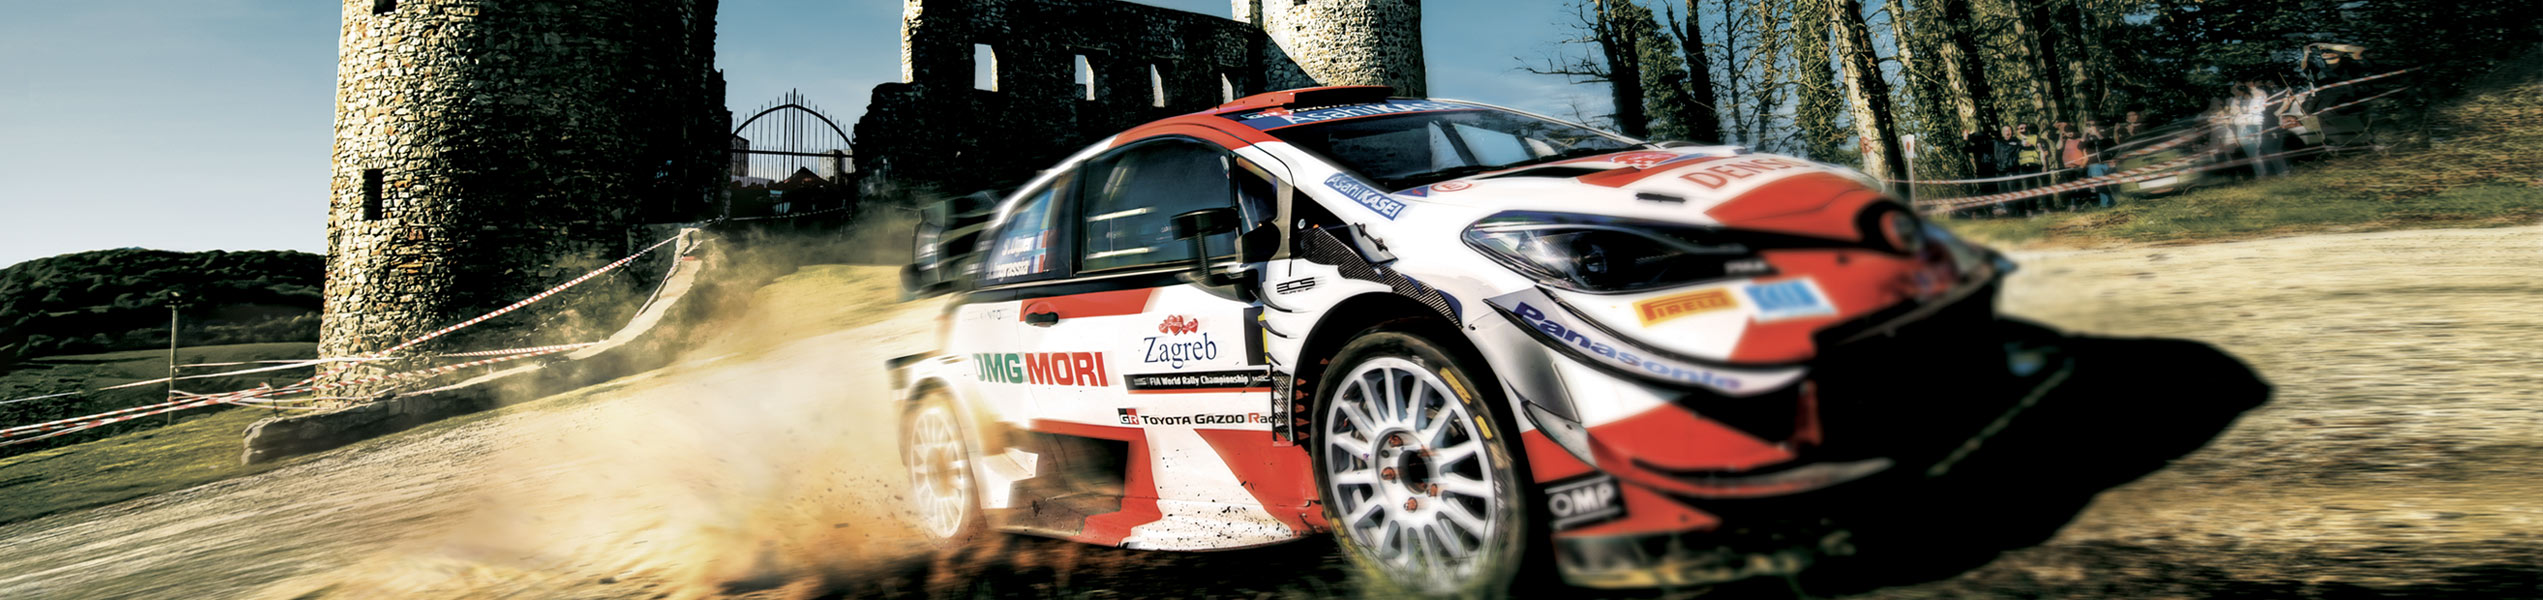 Croatia Rally ready to create more magic WRC memories